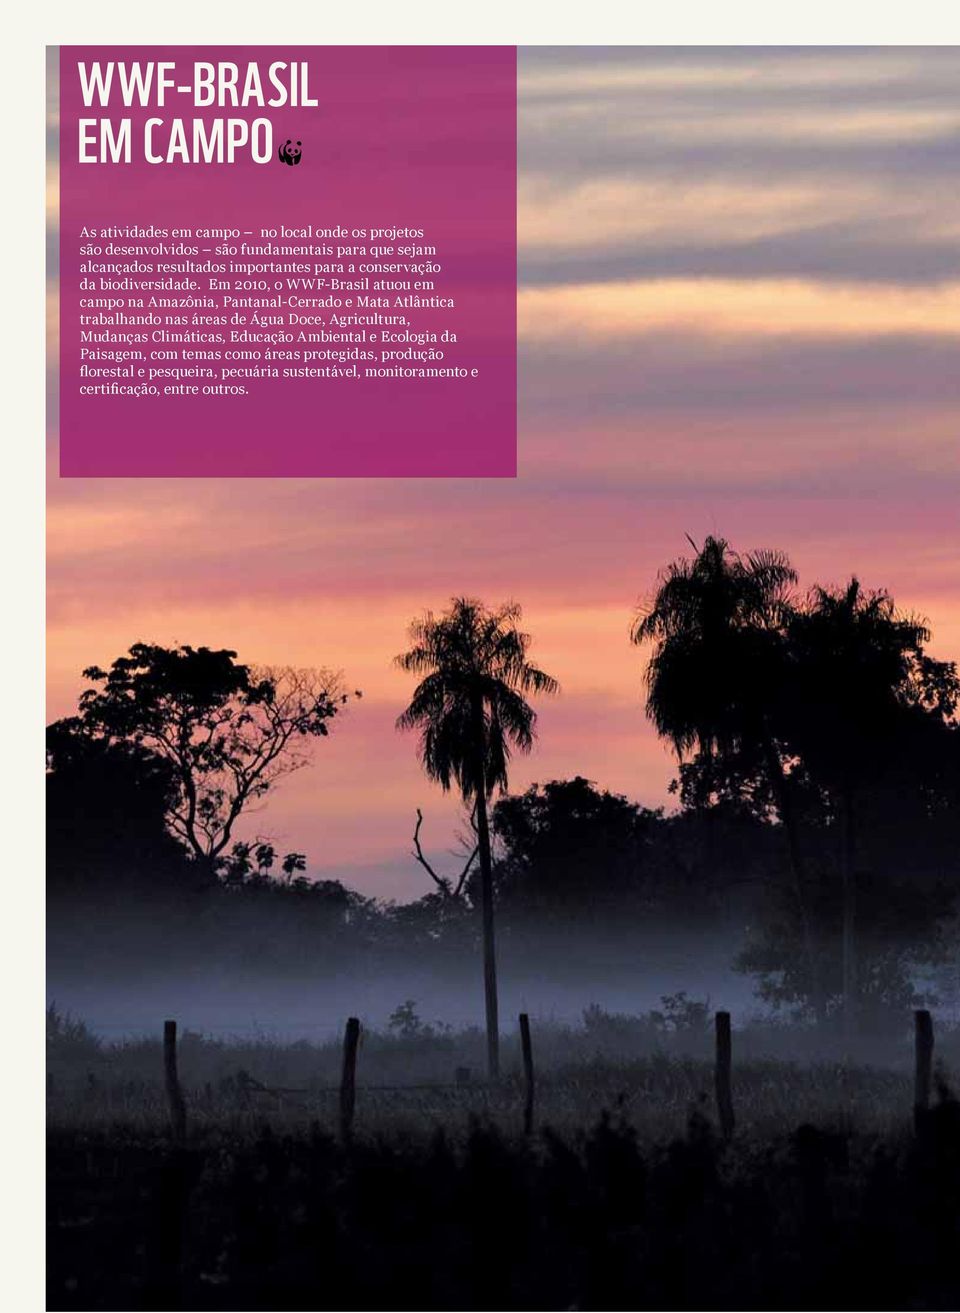 Em 2010, o WWF-Brasil atuou em campo na Amazônia, Pantanal-Cerrado e Mata Atlântica trabalhando nas áreas de Água Doce,